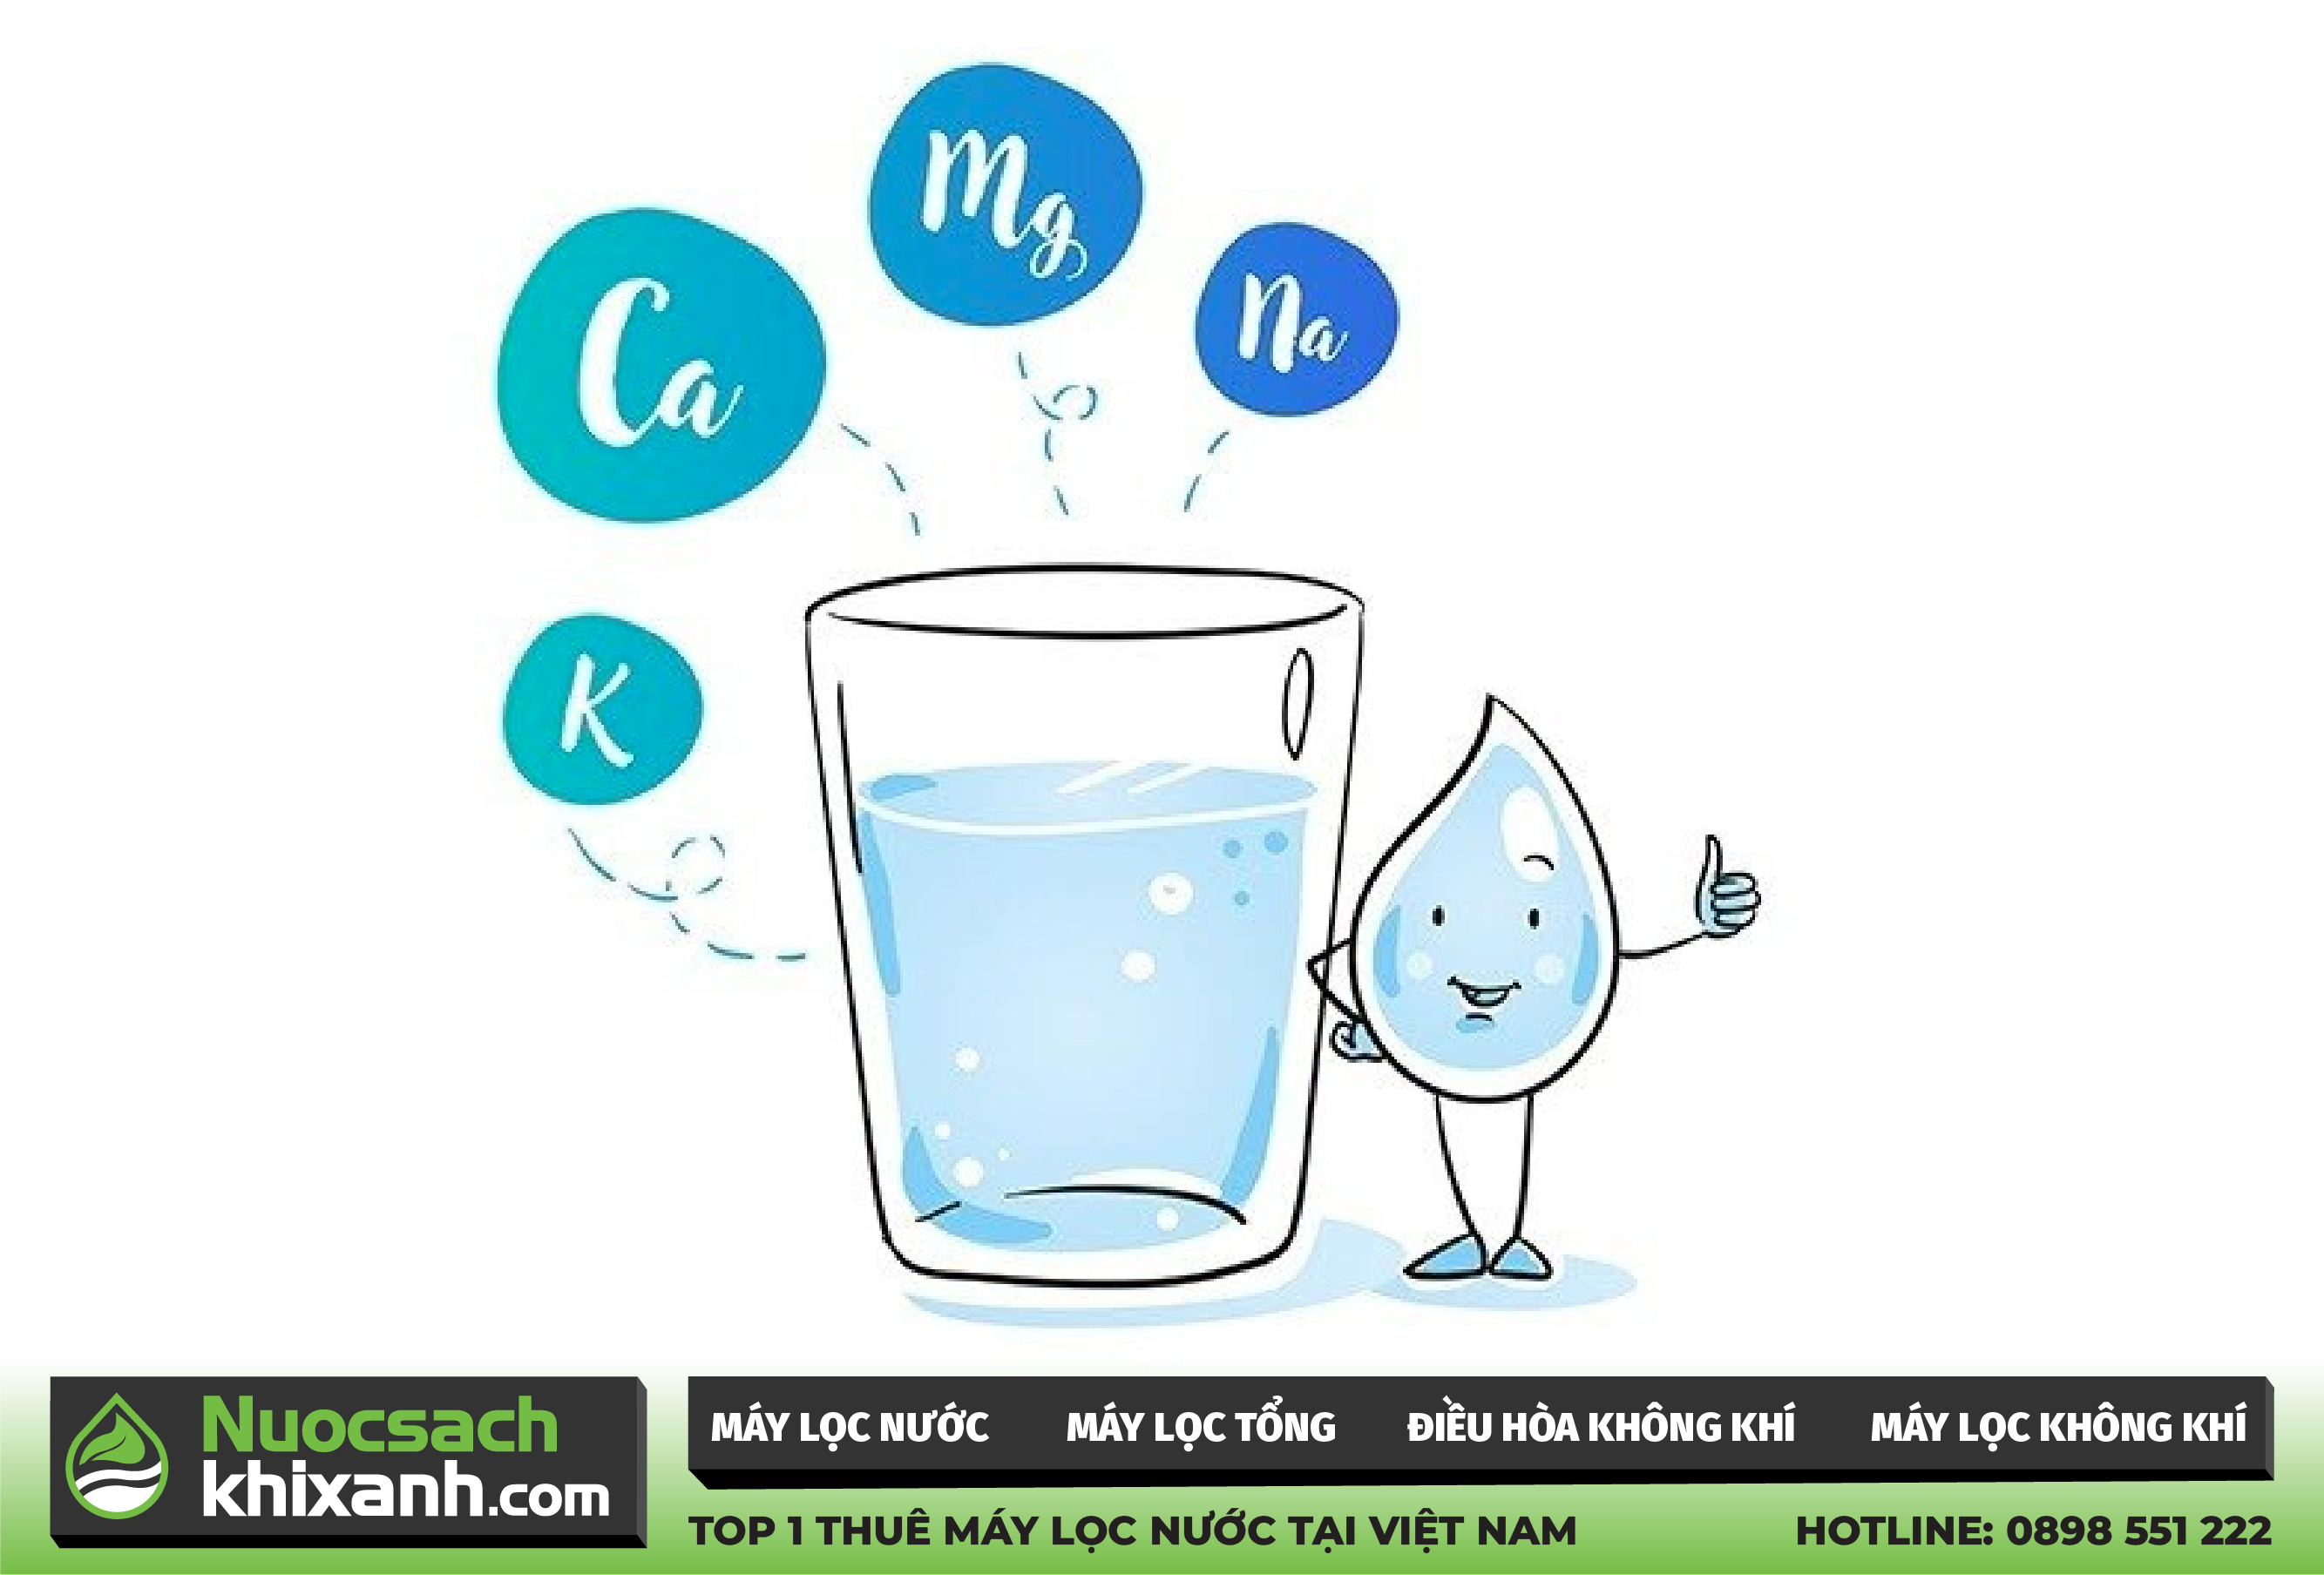 Nước khoáng là gì? Nên uống nước khoáng hay nước tinh khiết?